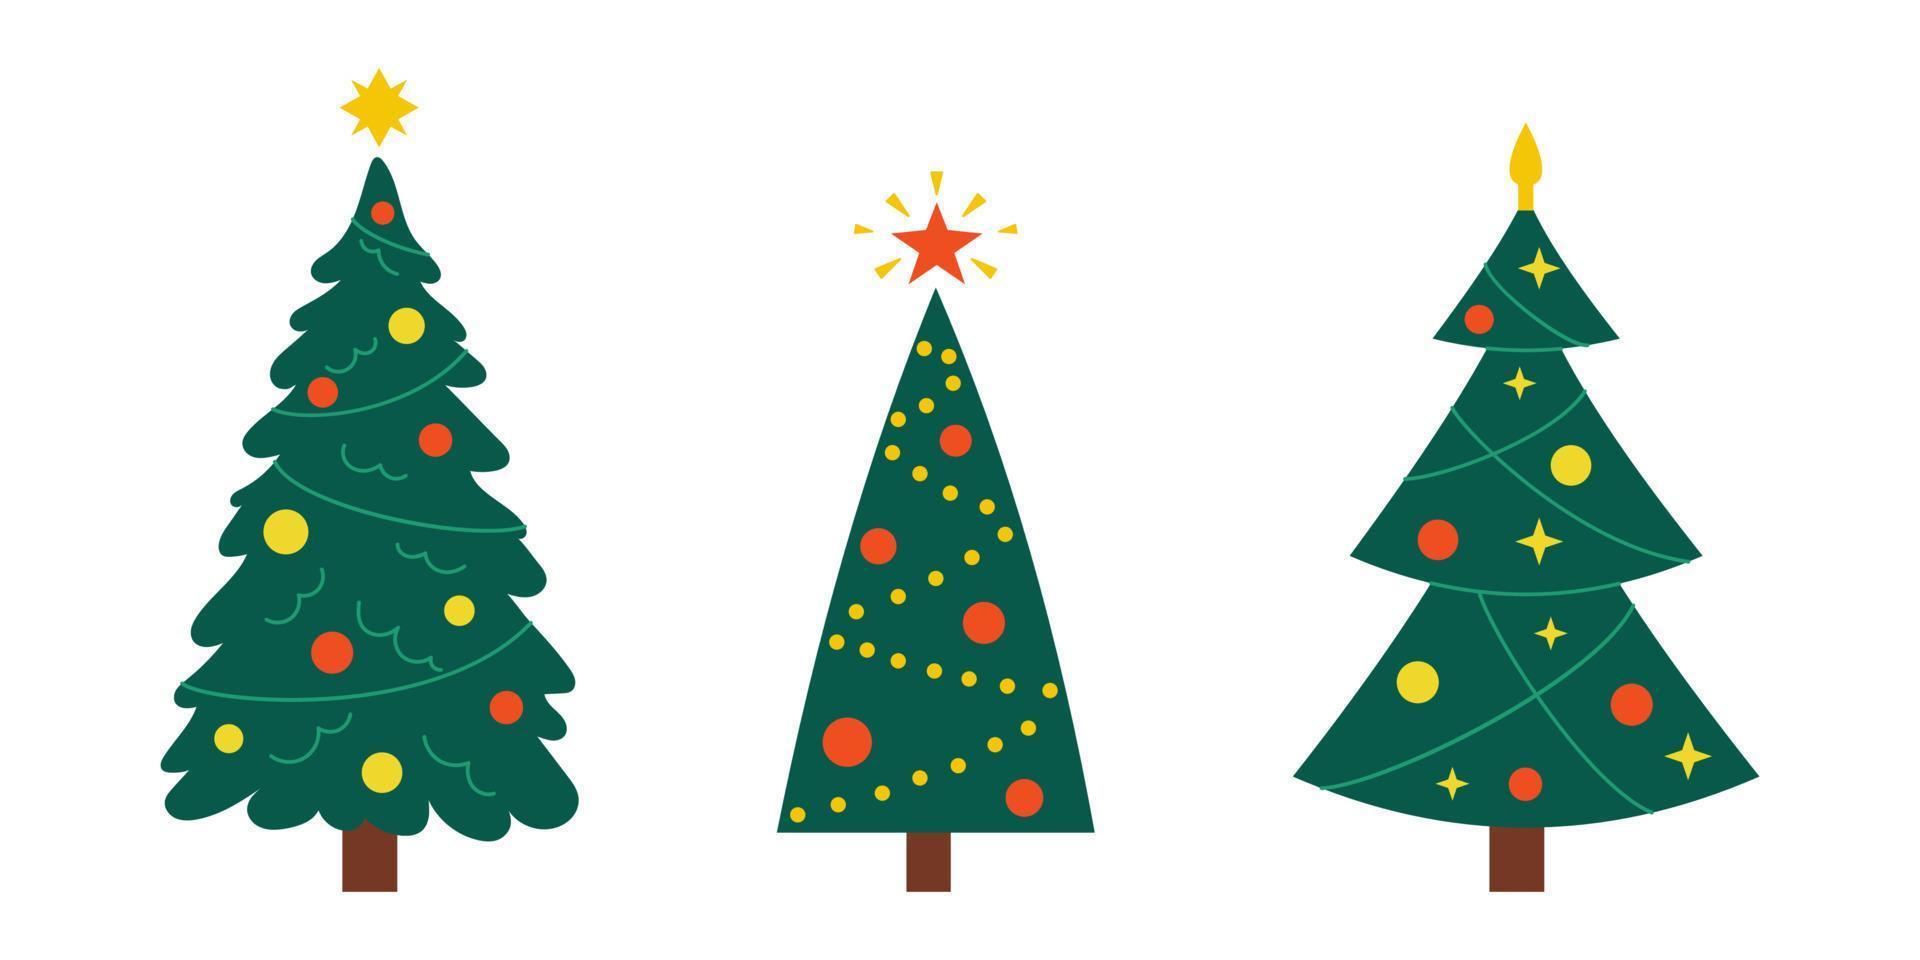 vektor ny år uppsättning med jul träd. söt vintergröna träd med bollar, stjärnor och girlanger. gran träd för jul.